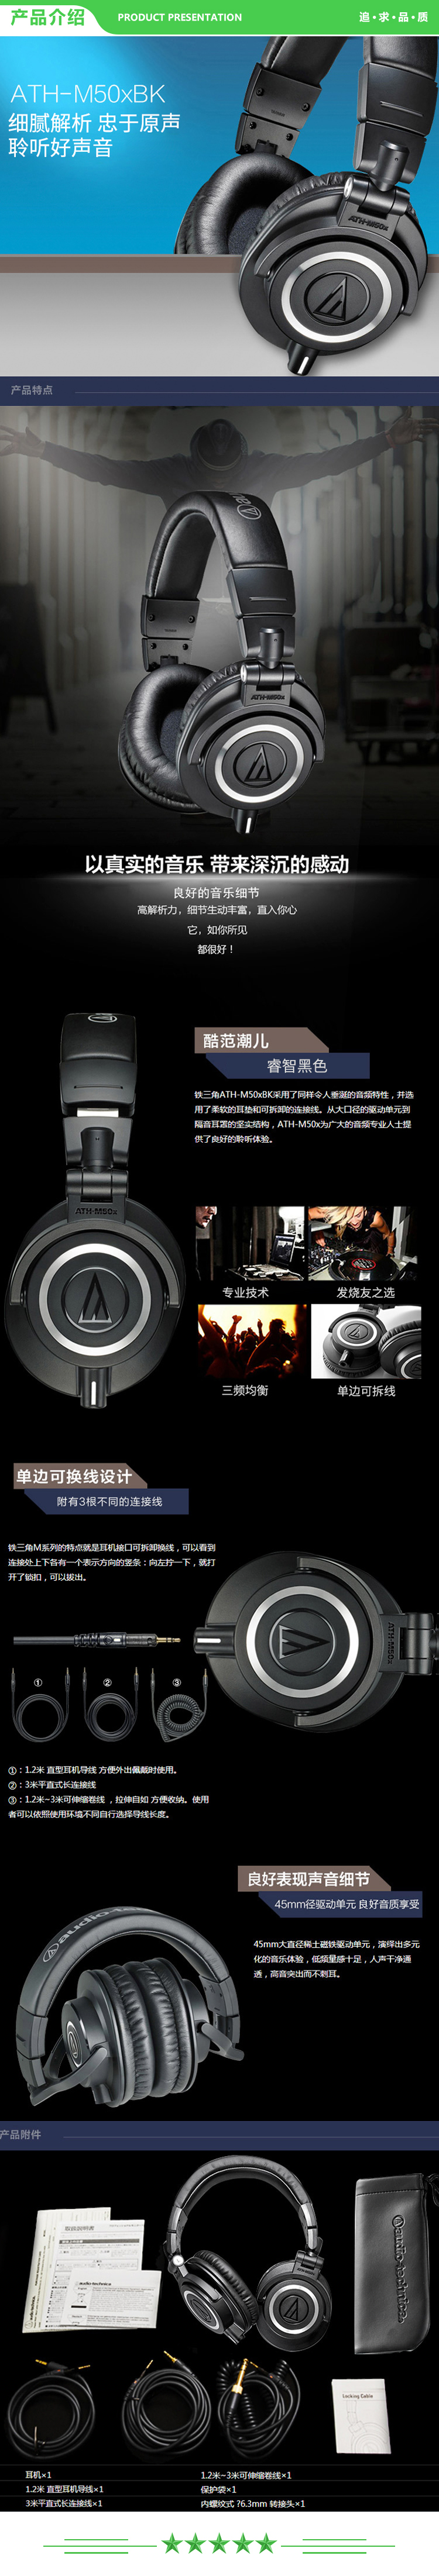 铁三角 Audio-technica ATH-M50X BK 头戴式专业全封闭监听音乐HIFI耳机 黑色 .jpg